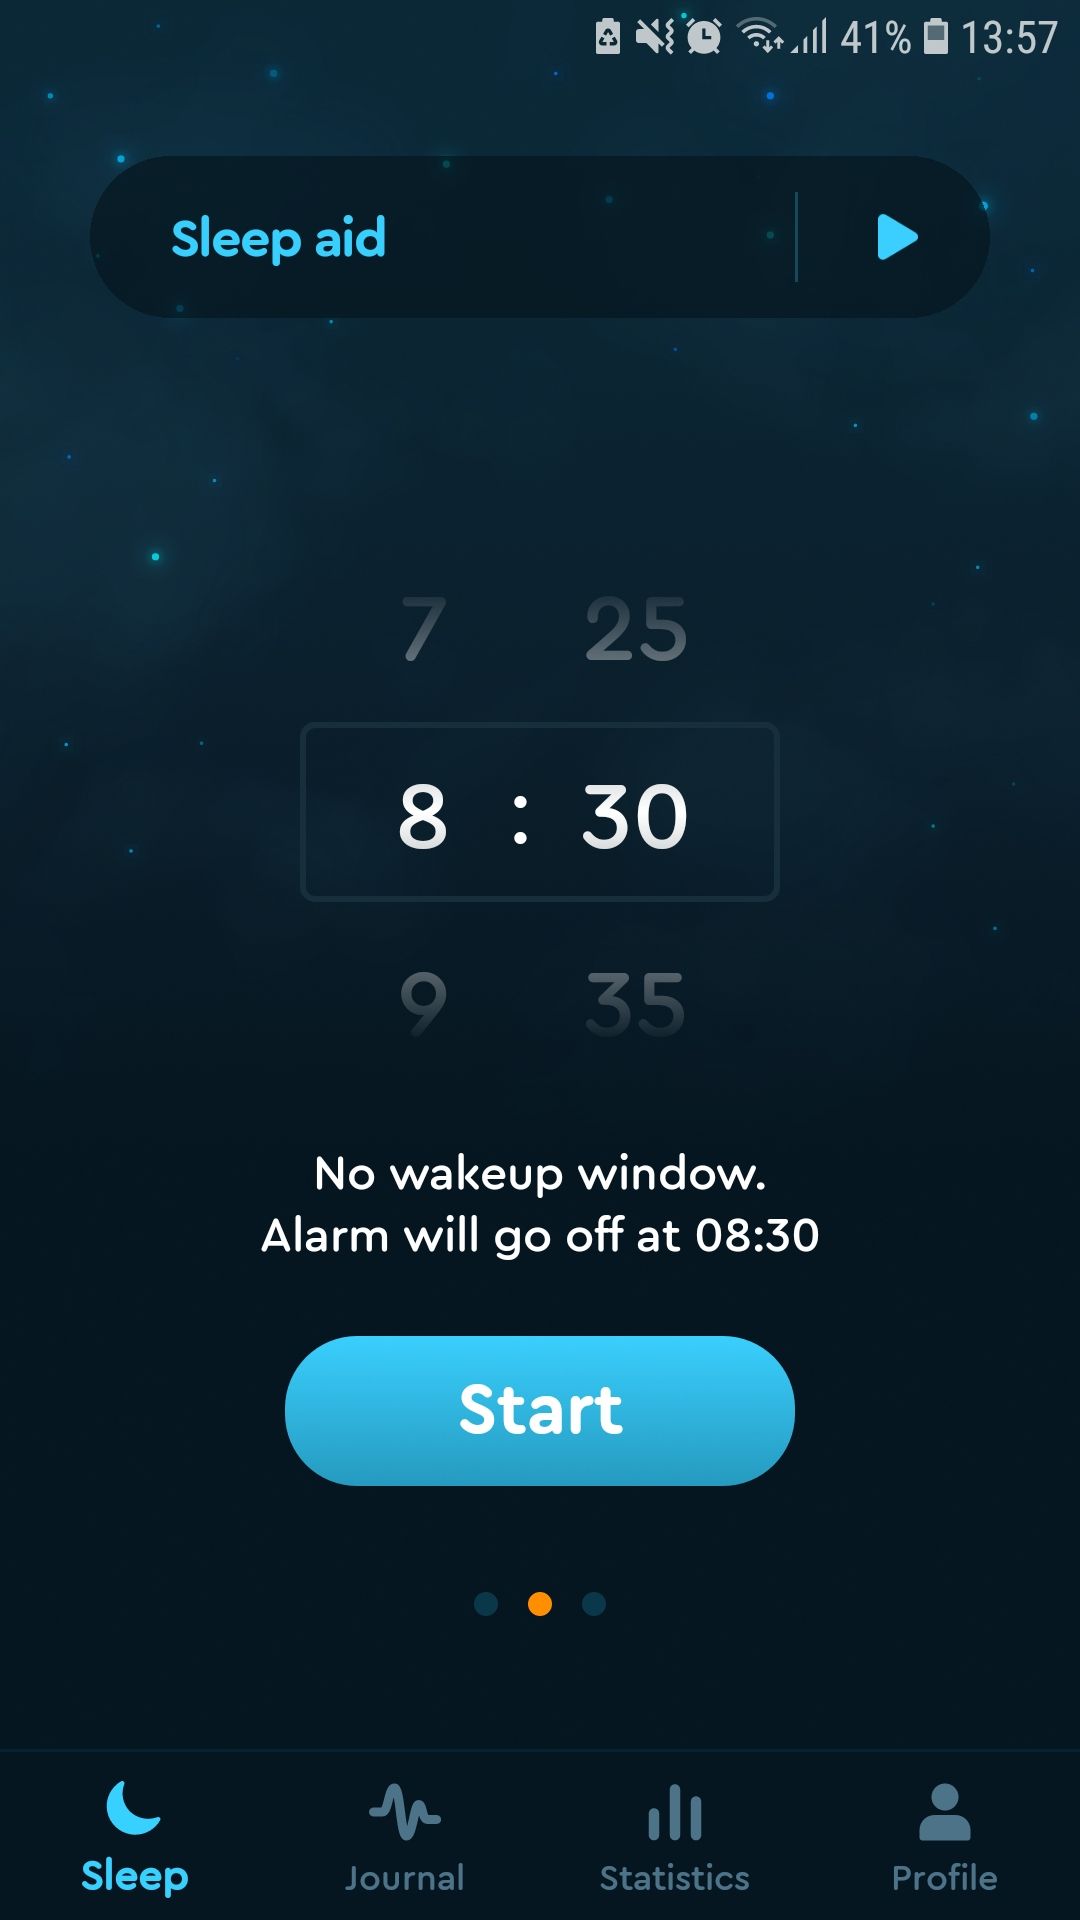 Sleep Cycle sleep tracking mobile app